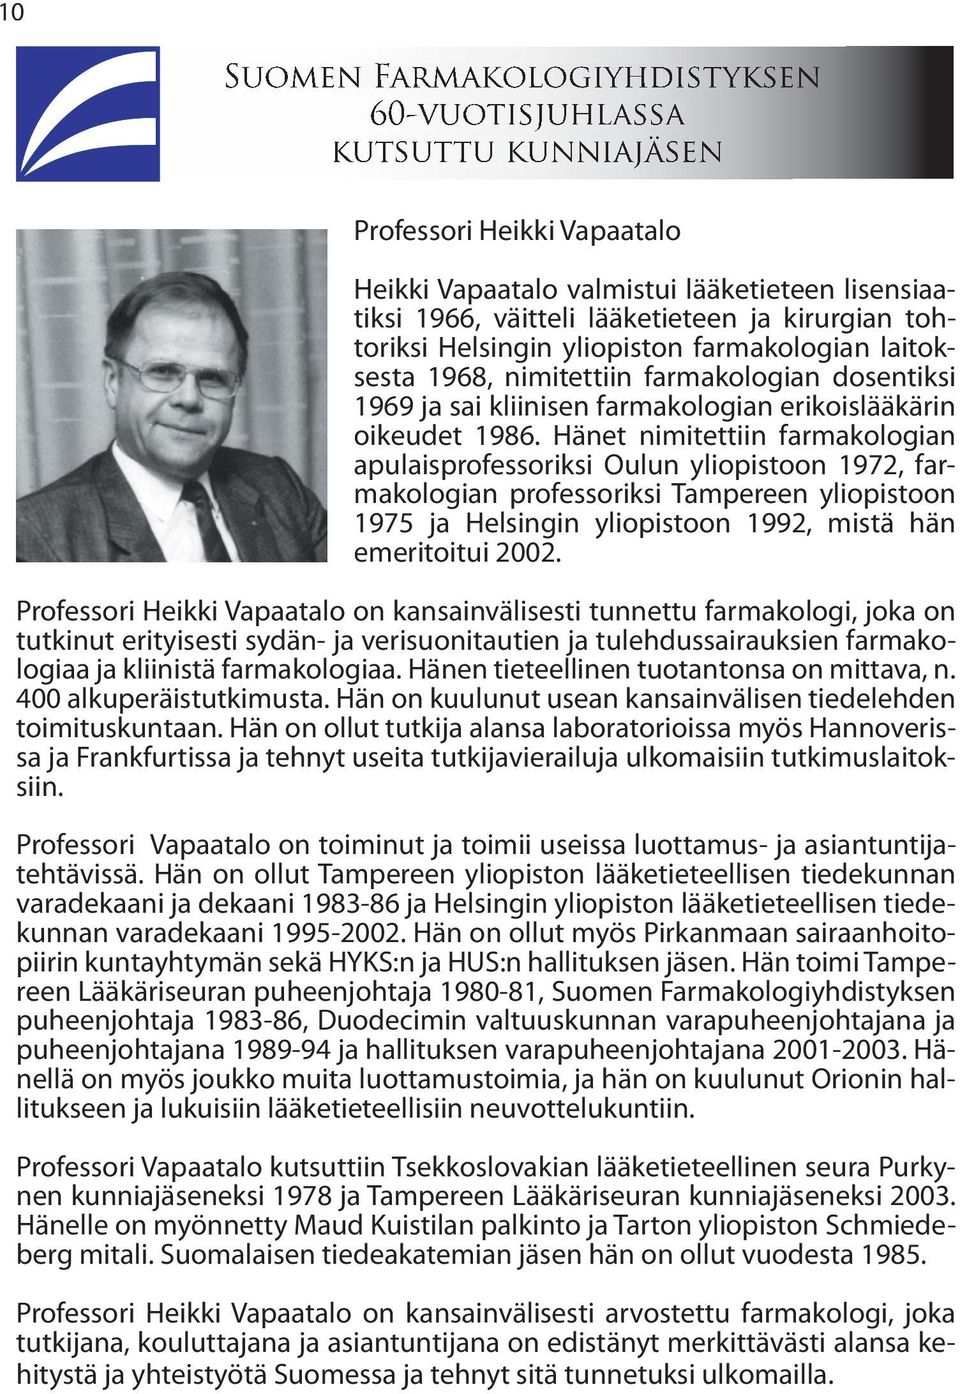 Hänet nimitettiin farmakologian apulaisprofessoriksi Oulun yliopistoon 1972, farmakologian professoriksi Tampereen yliopistoon 1975 ja Helsingin yliopistoon 1992, mistä hän emeritoitui 2002.